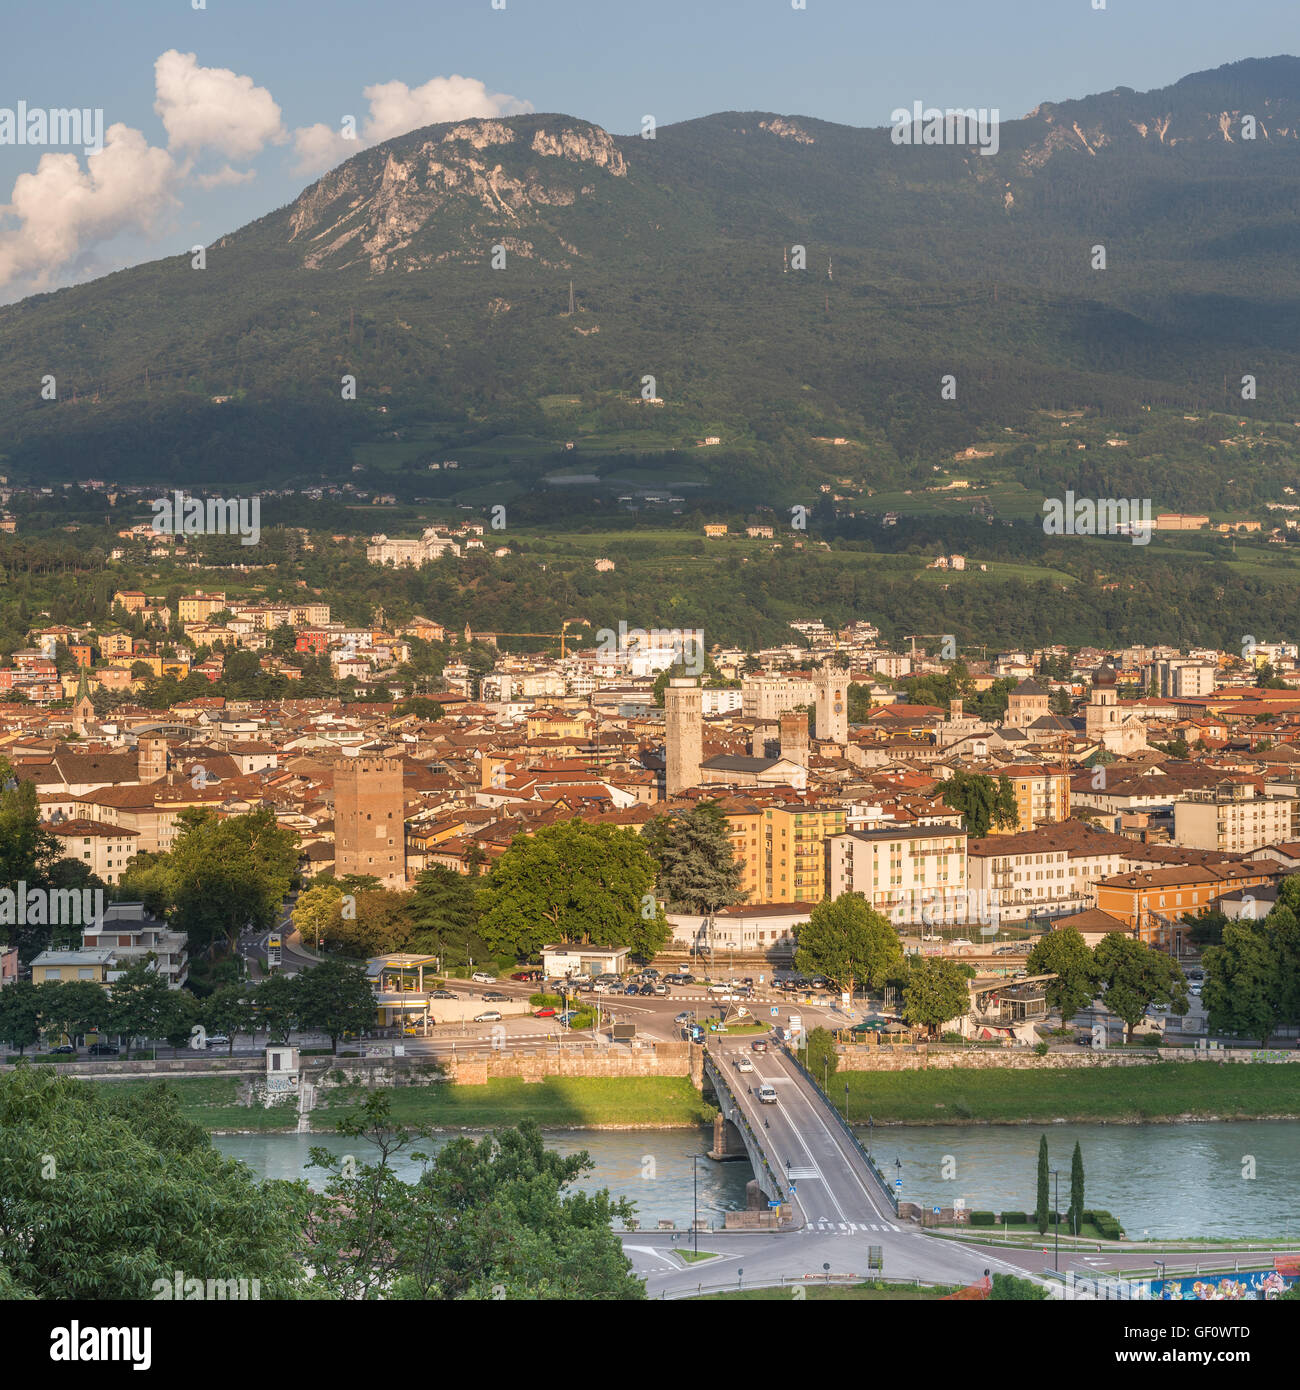 View of Trento, Italy Stock Photo